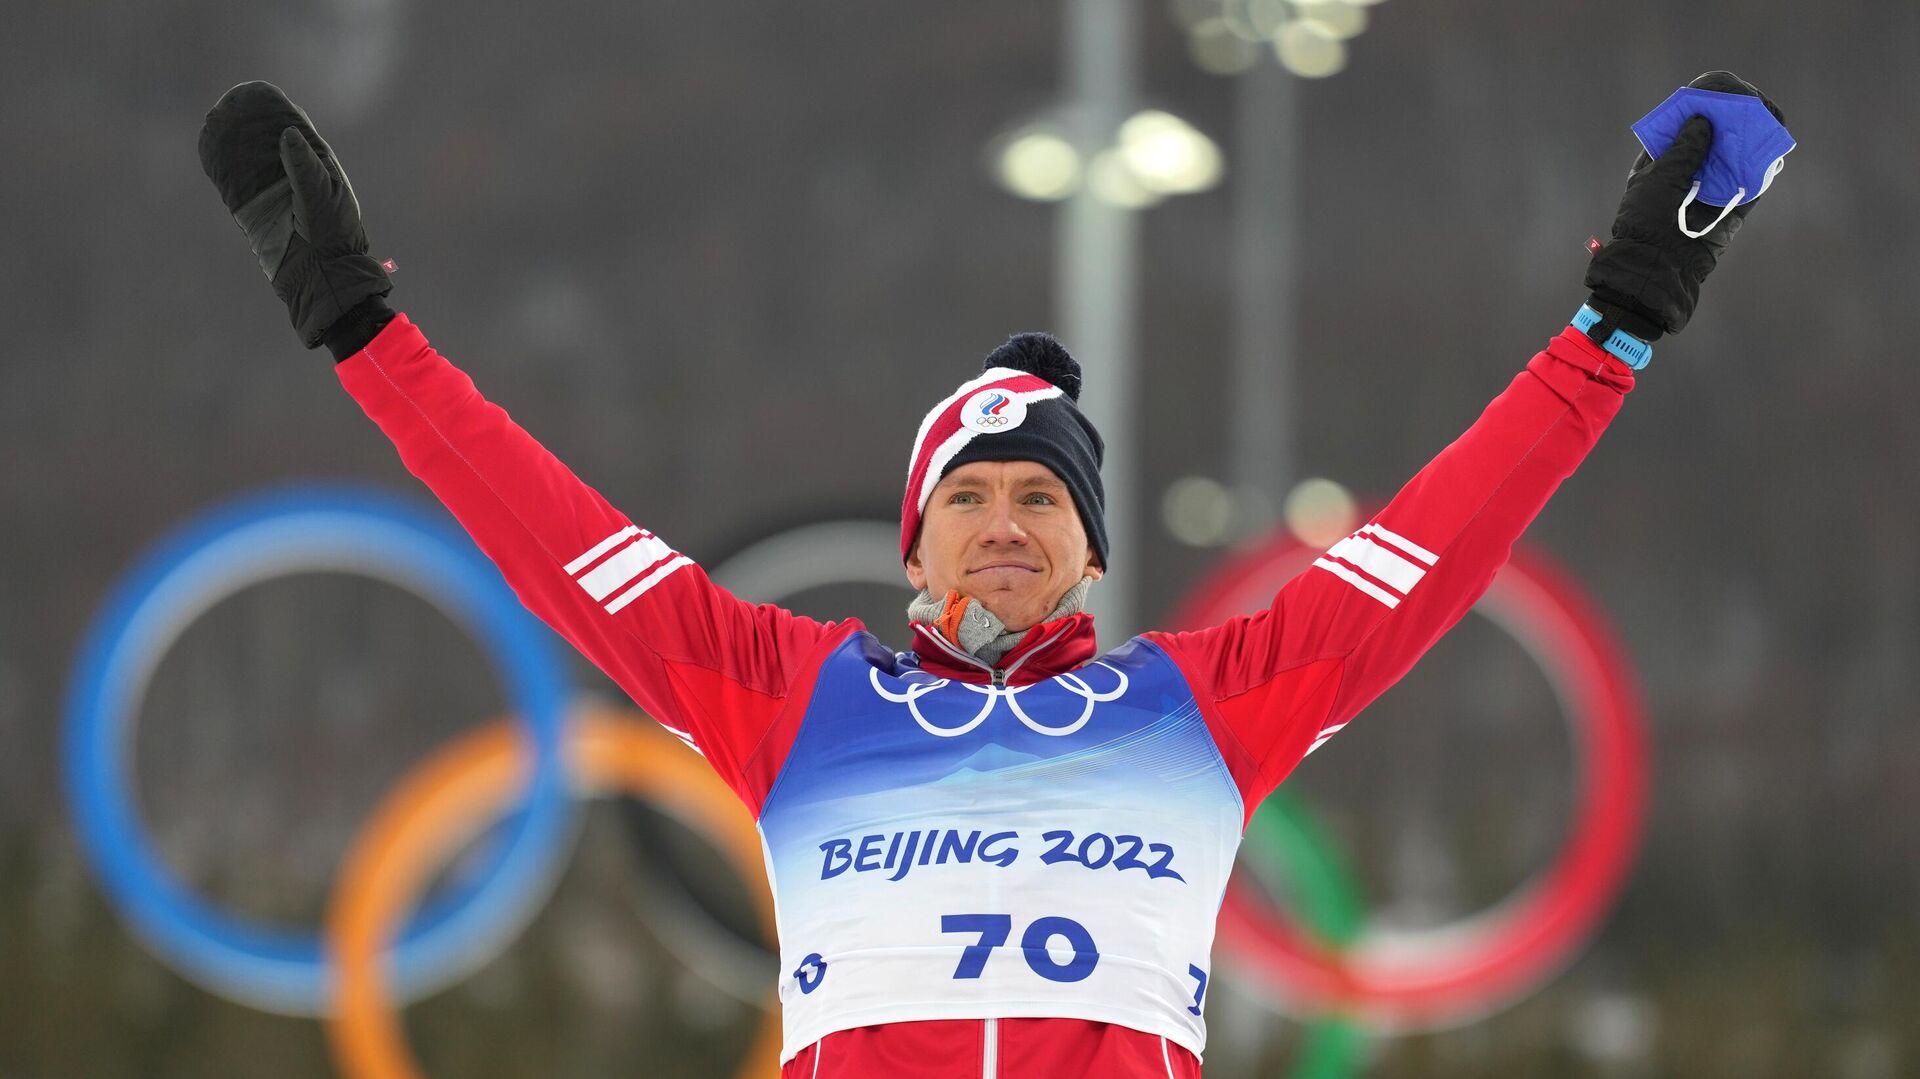 Ruski skijaš Aleksandar Bolšunov na Zimskim olimpijskim igrama u Pekingu - Sputnik Srbija, 1920, 11.02.2022